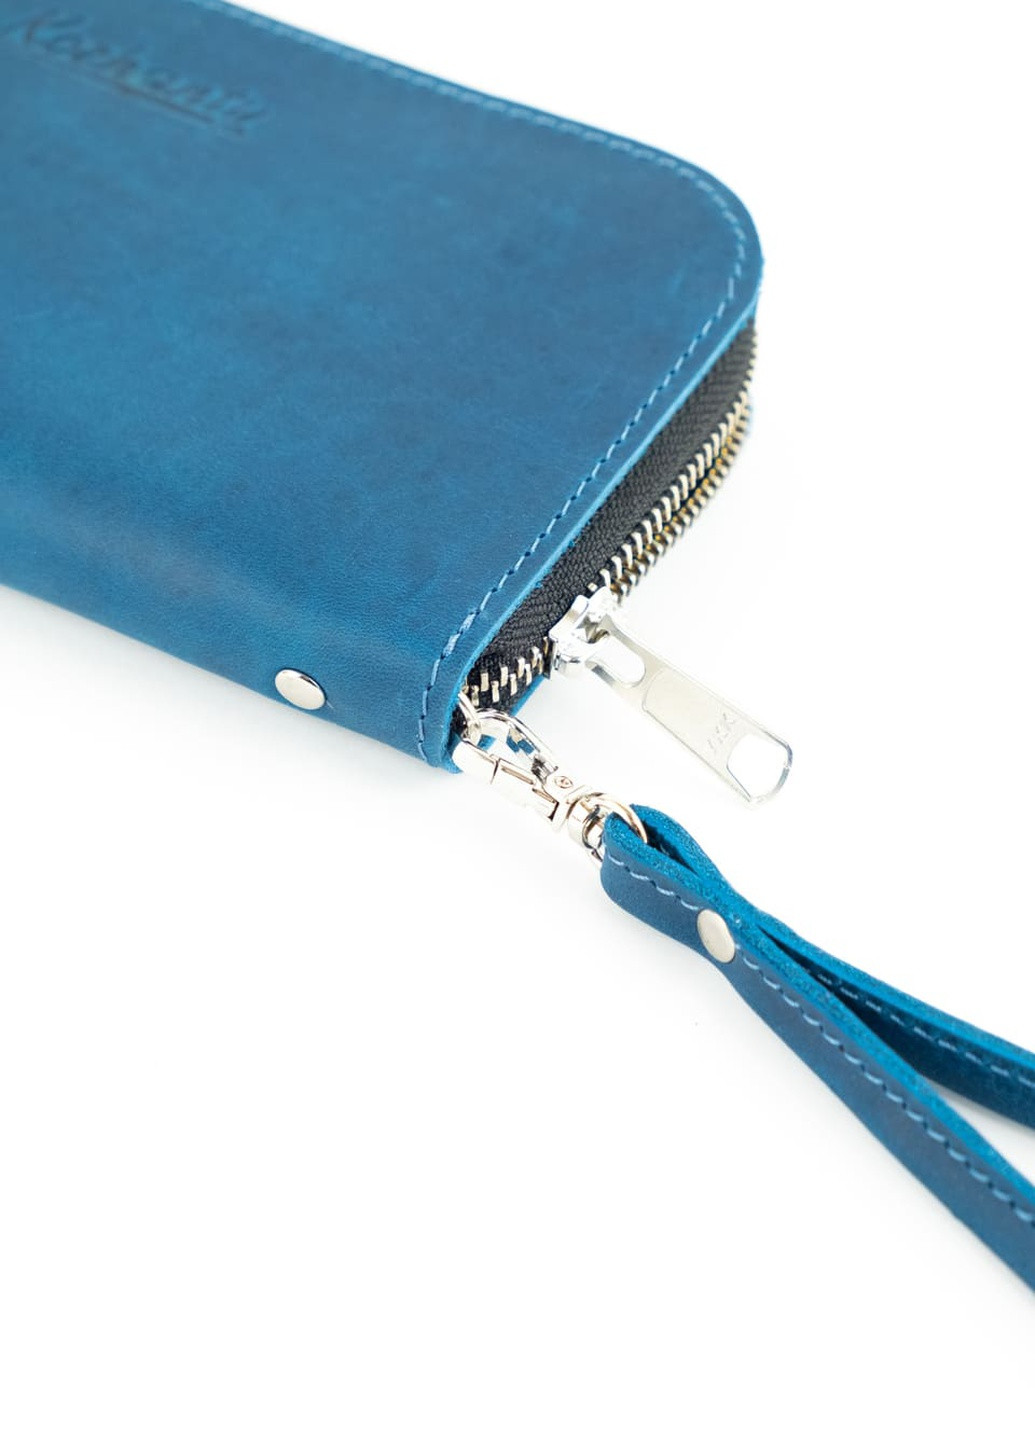 Кожаный портмоне кошелек зиппер на молнии Teo синий винтажный Kozhanty (252315361)